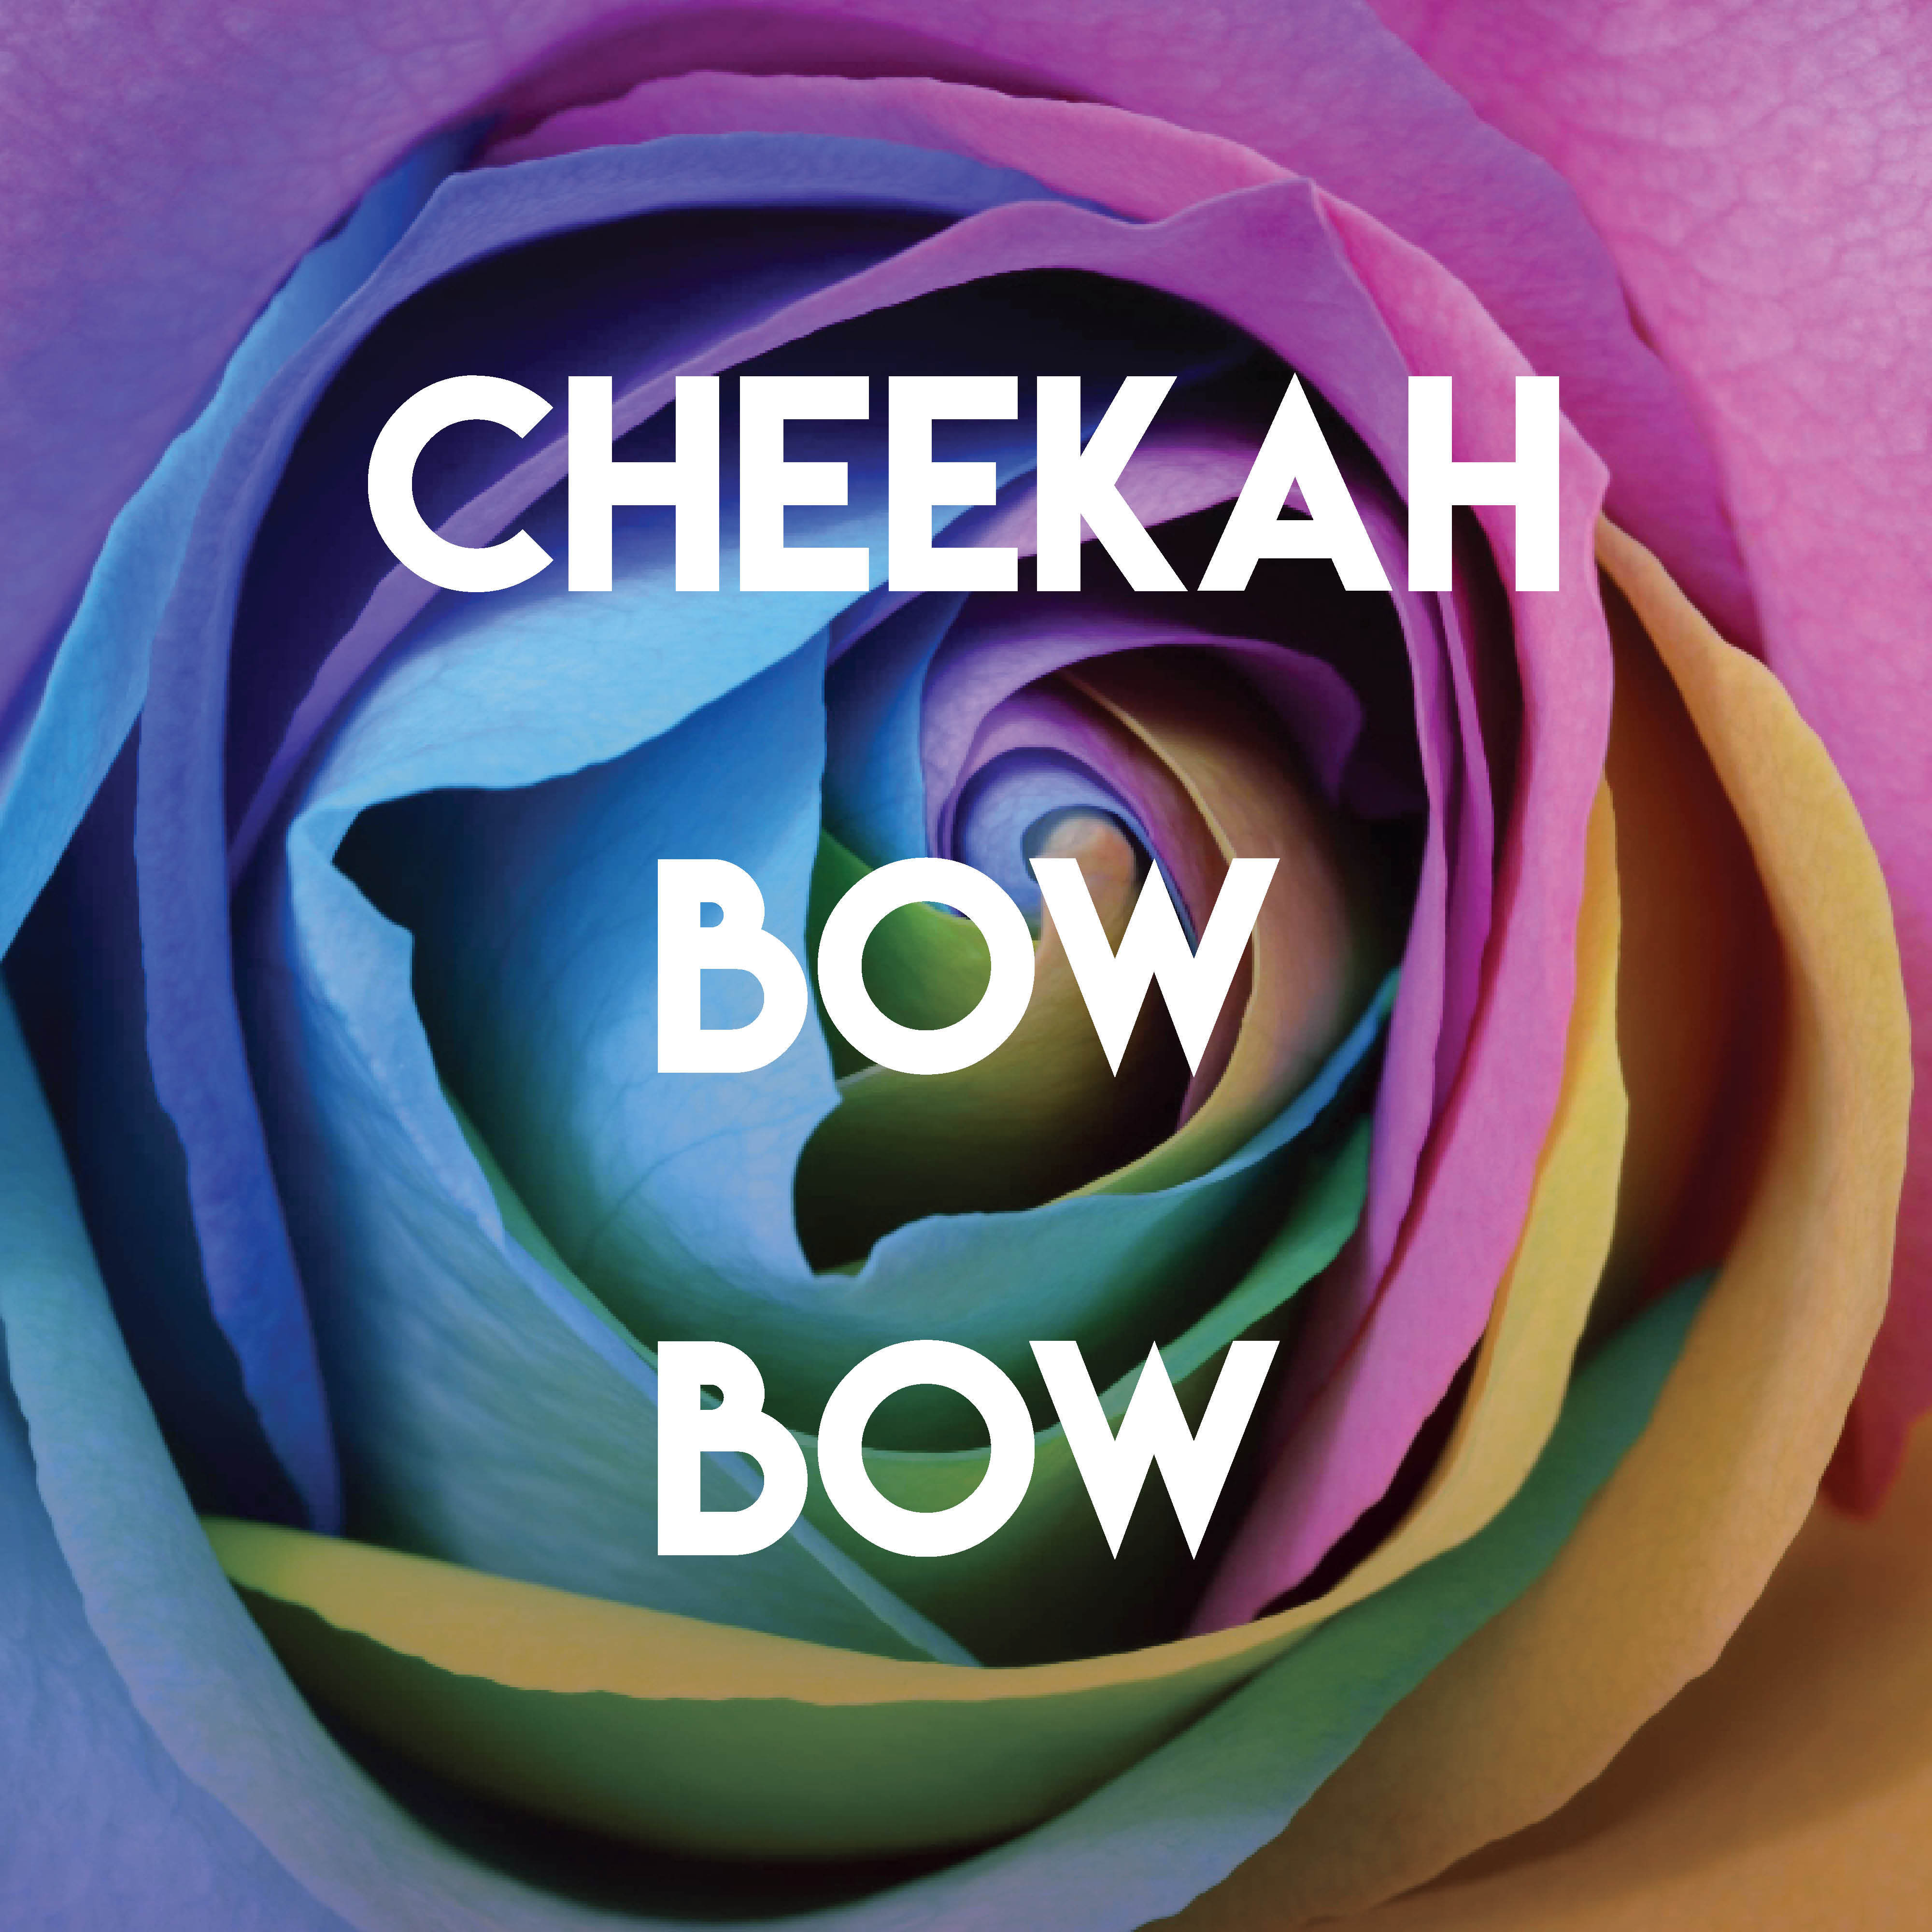 Cheekah Bow Bow